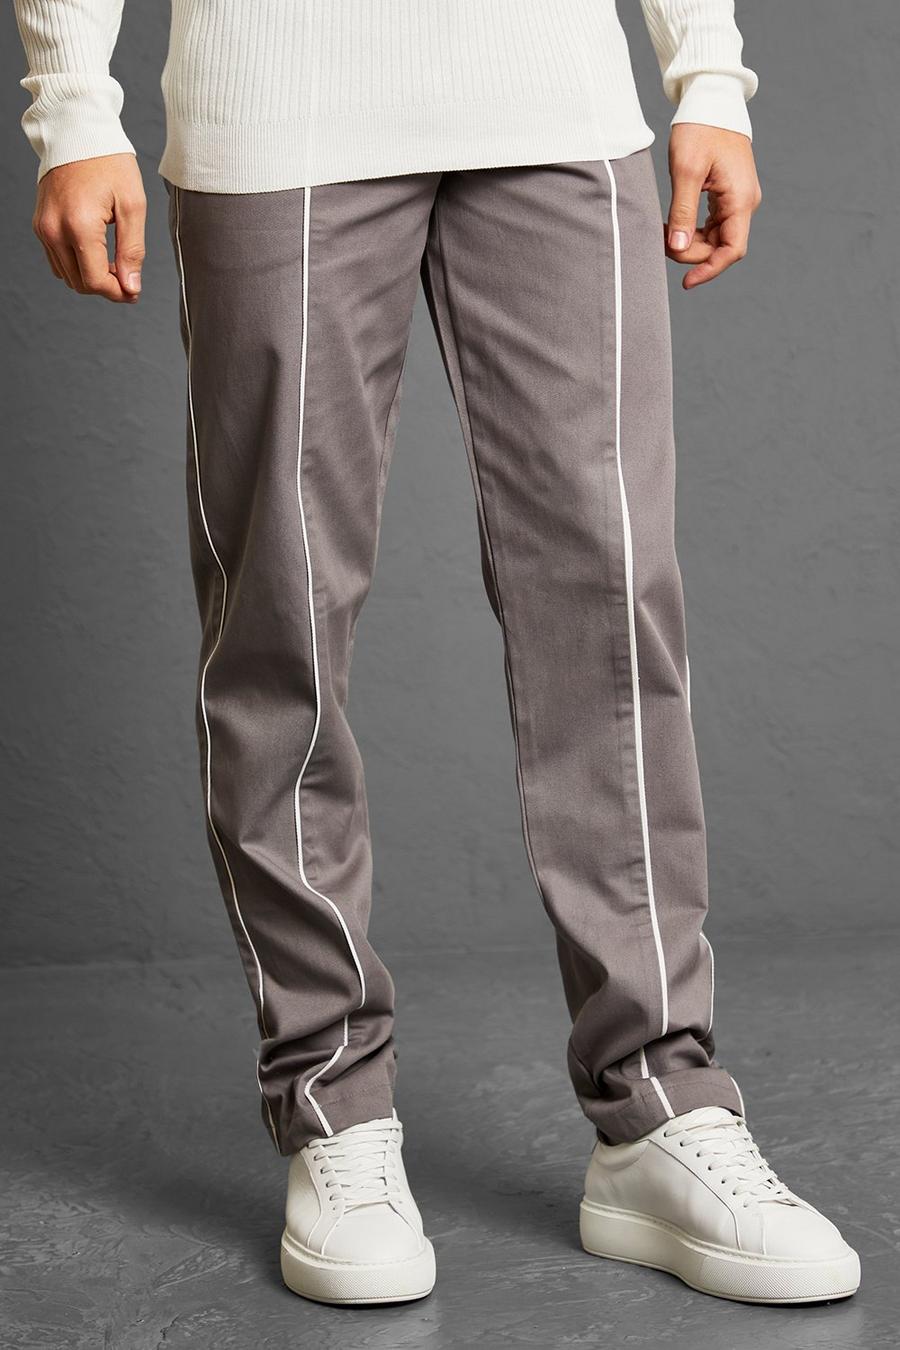 אפור gris מכנסיים מבד עבה בגזרה ישרה עם פסים כפולים